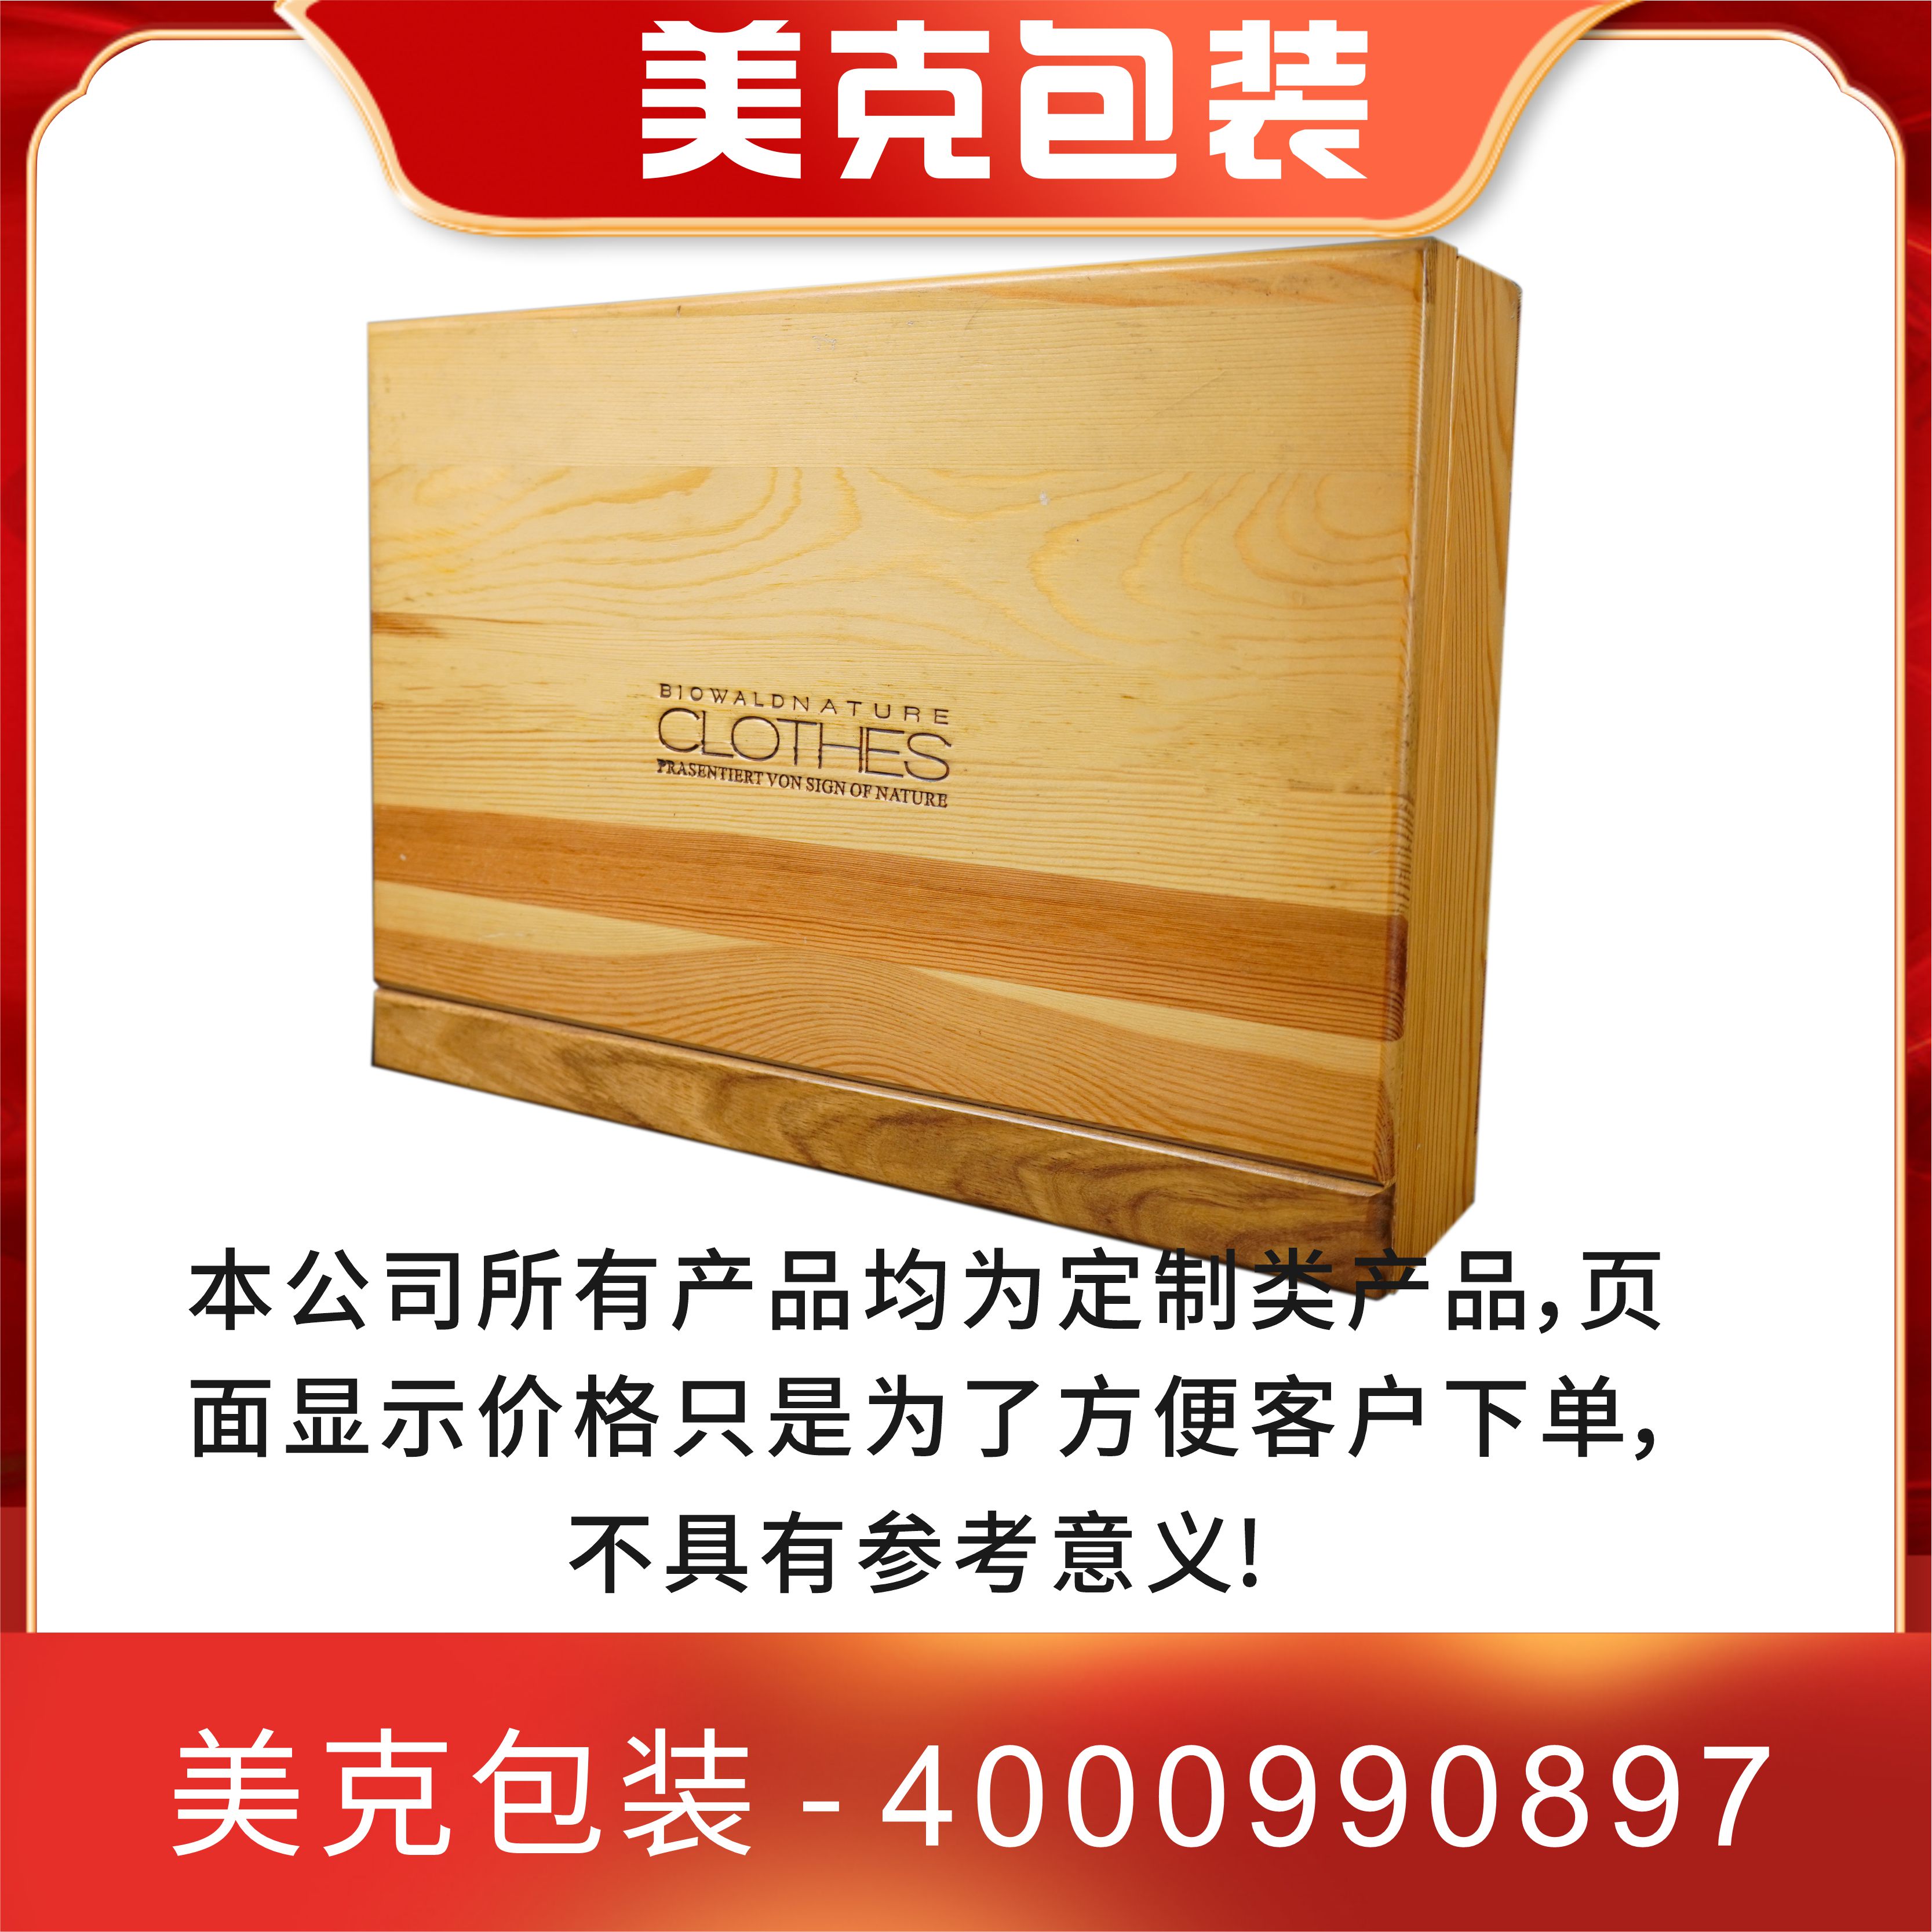 木质礼盒包装